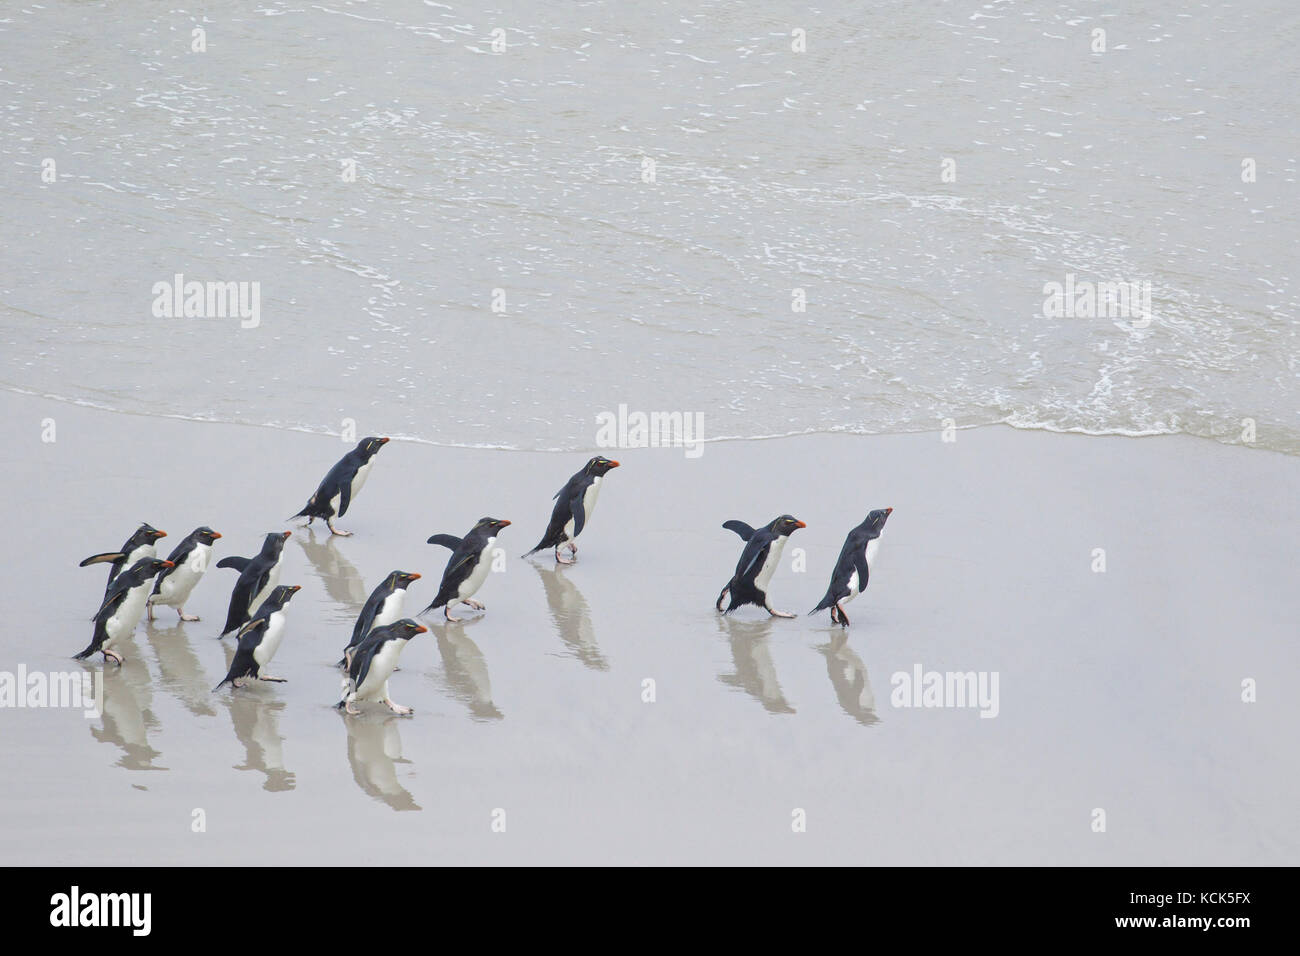 Rockhopper Penguin (Eudyptes chrysocome) le long de la plage, dans les îles Falkland Banque D'Images